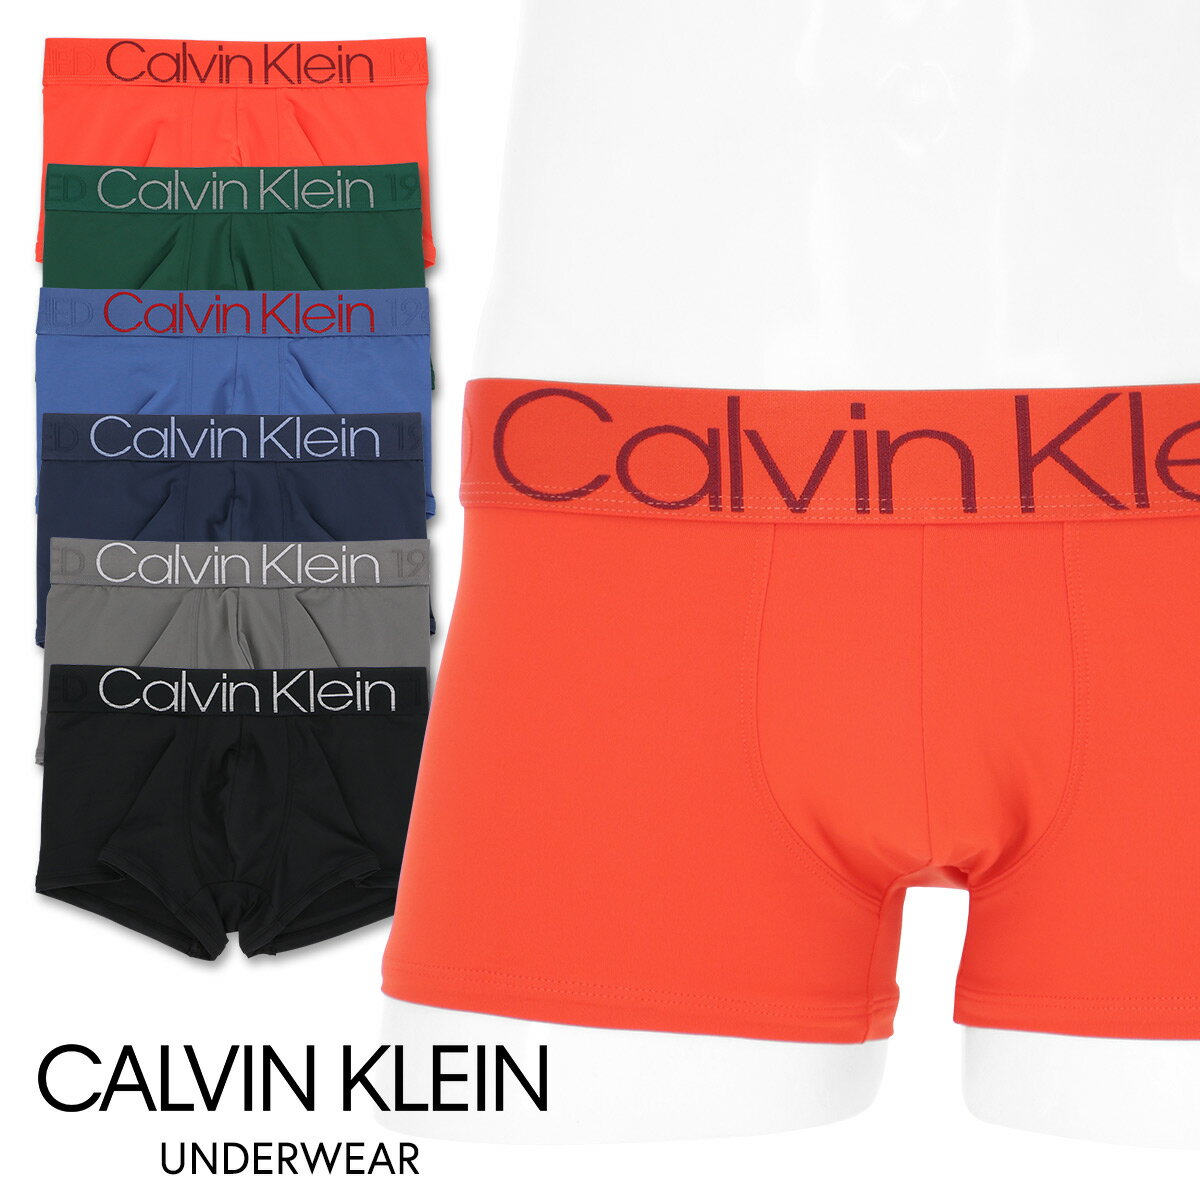 Calvin Klein Evolution Micro Low-rise Trunk カルバンクライン・エヴォリューション マイクロローライズ ボクサーパンツ男性 メンズ プレゼント 贈答 ギフト5368-1568 NB1568日本サイズ（M・L・XL）ポイント10倍